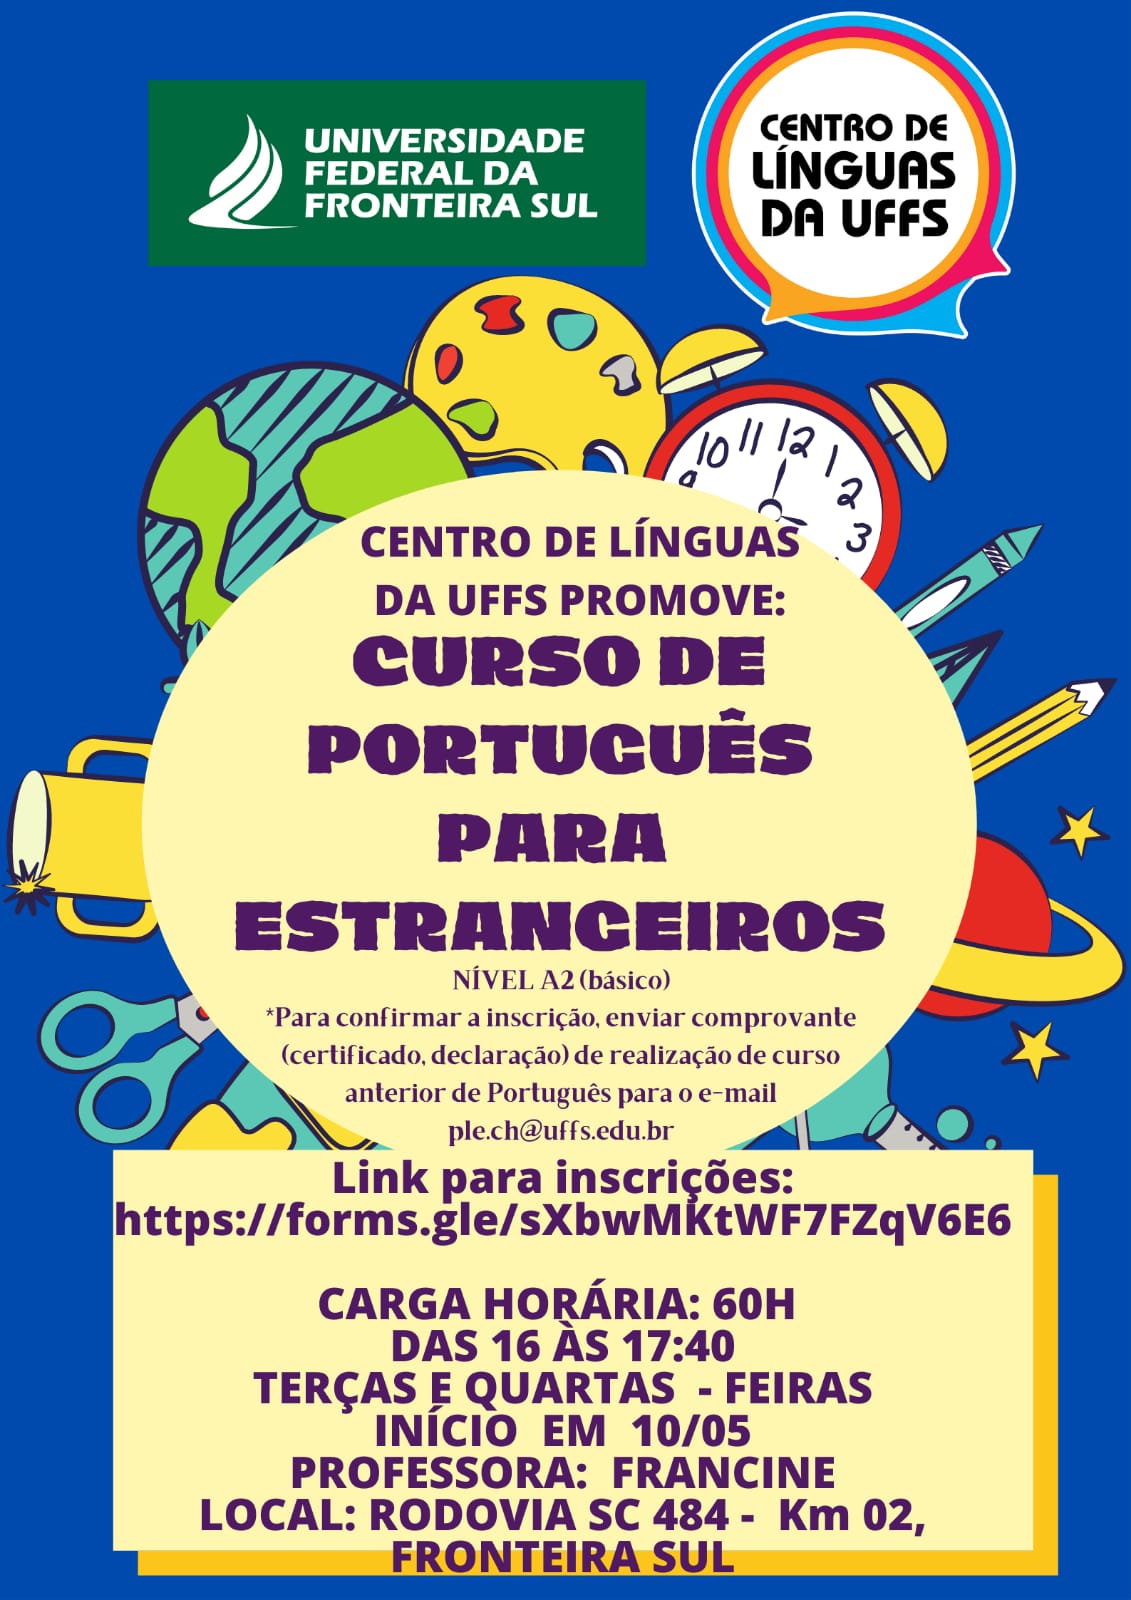 NucLi oferta curso gratuito de português para estrangeiros